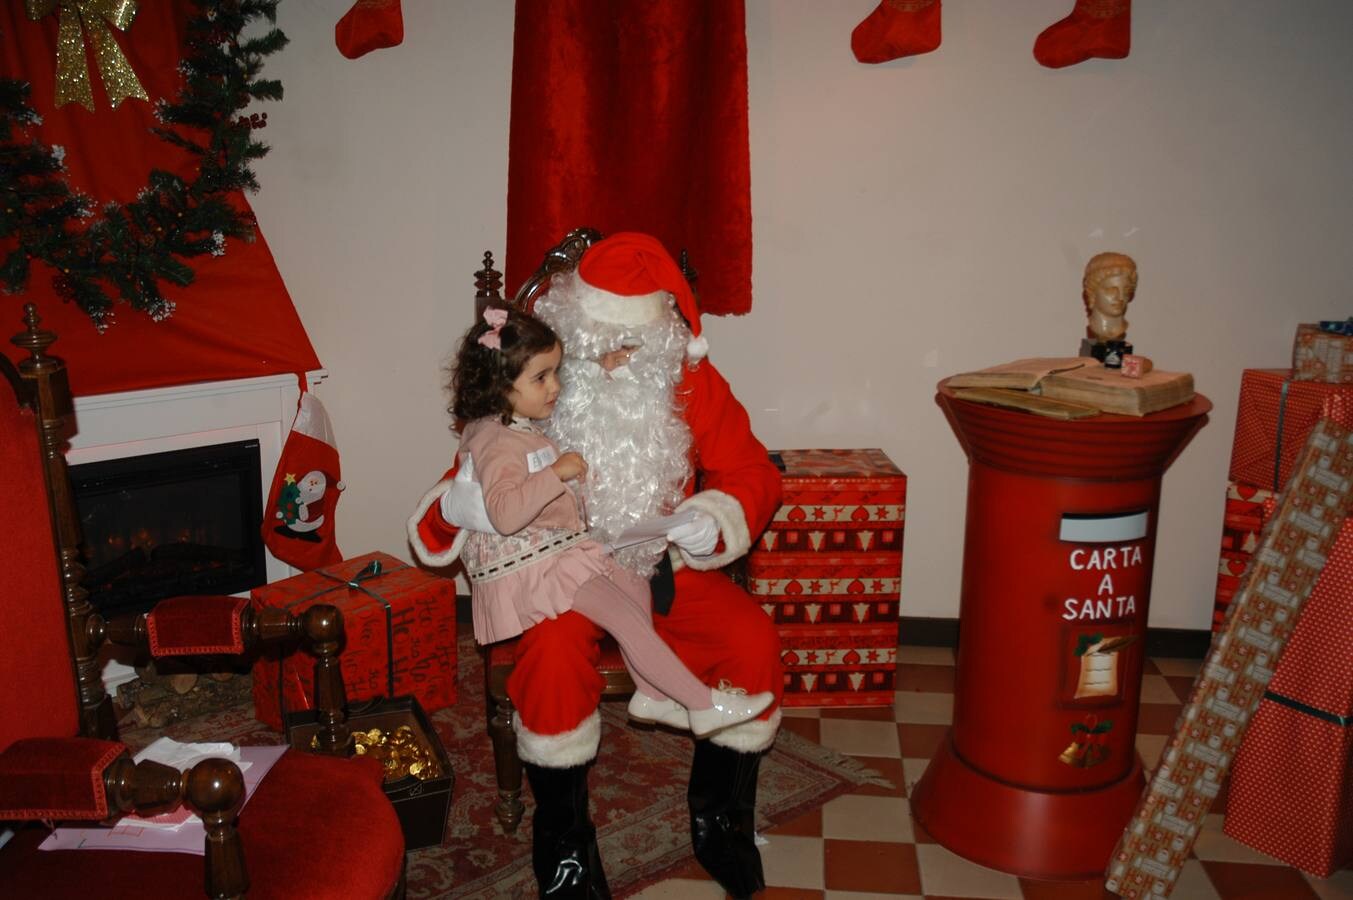 Diversas actividades han llenado estos días de espíritu navideño la localidad de Calahorra: belenes, música, Papá Noel, concurso de villancicos...